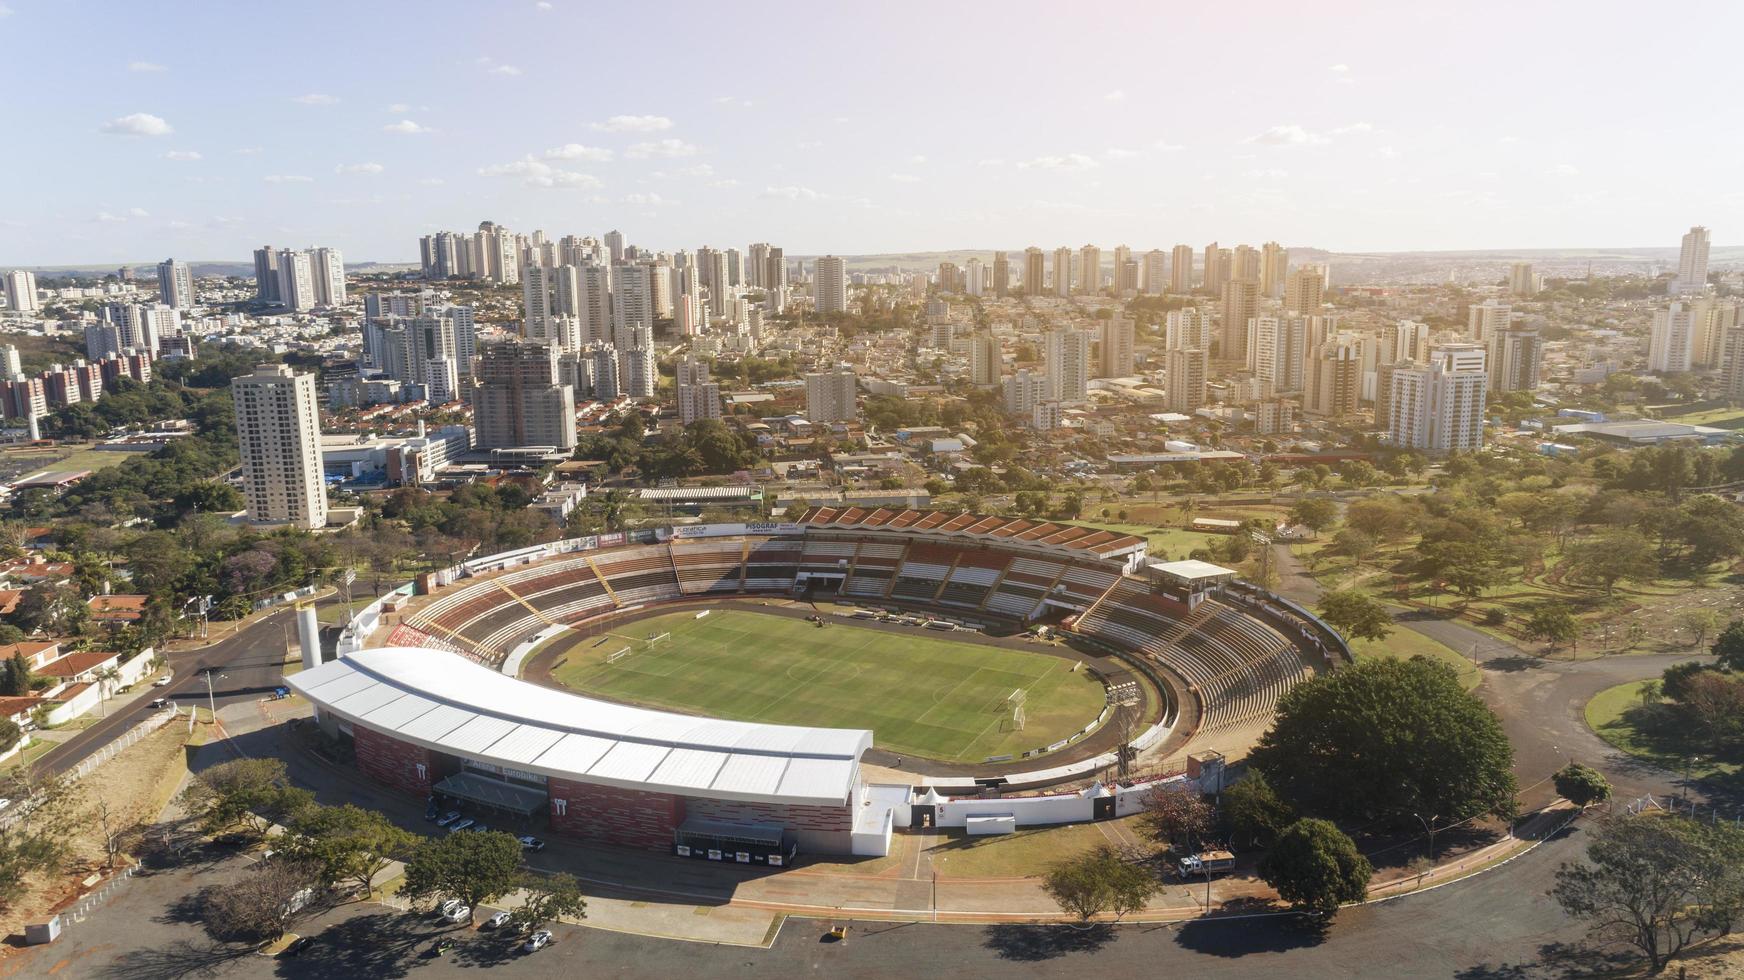 ribeirao preto, sao paulo, brazilië juli 2019 - luchtfoto van ribeirao preto foto